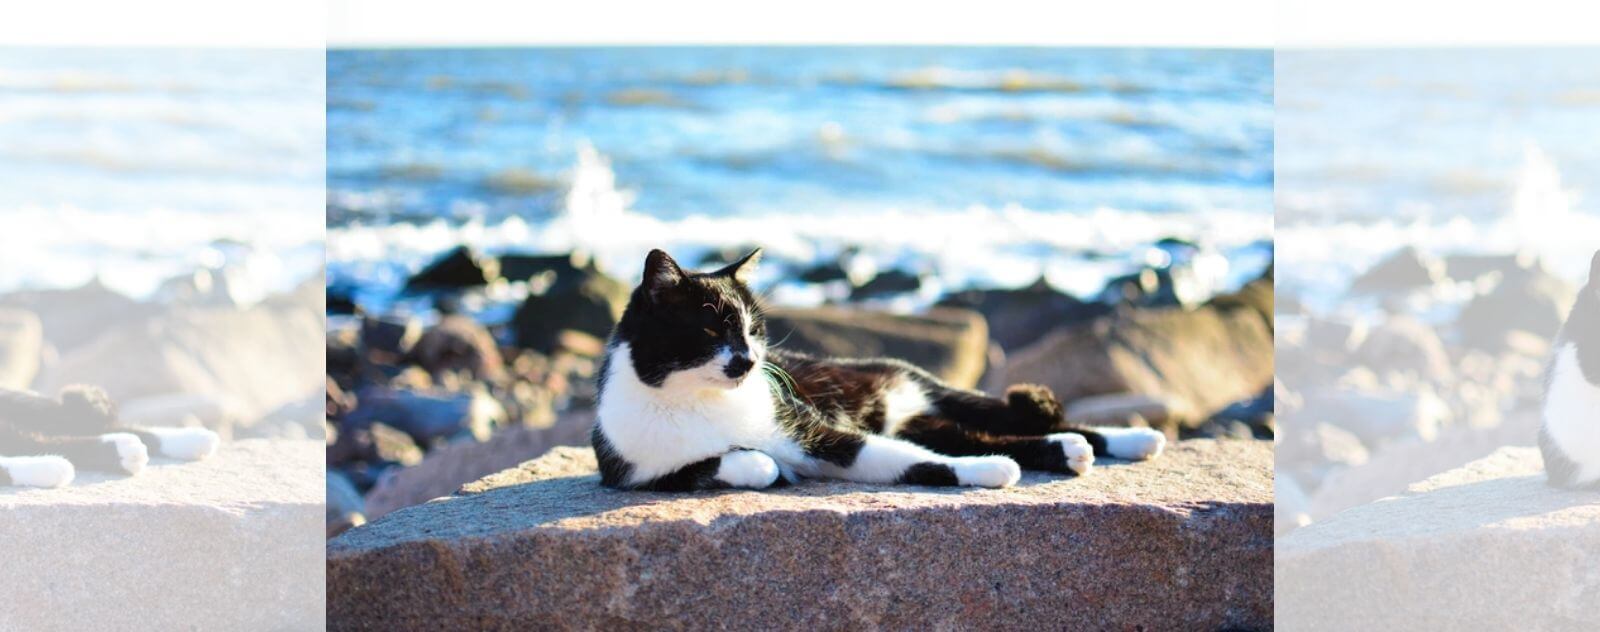 Gato blanco y negro tumbado al sol junto al mar